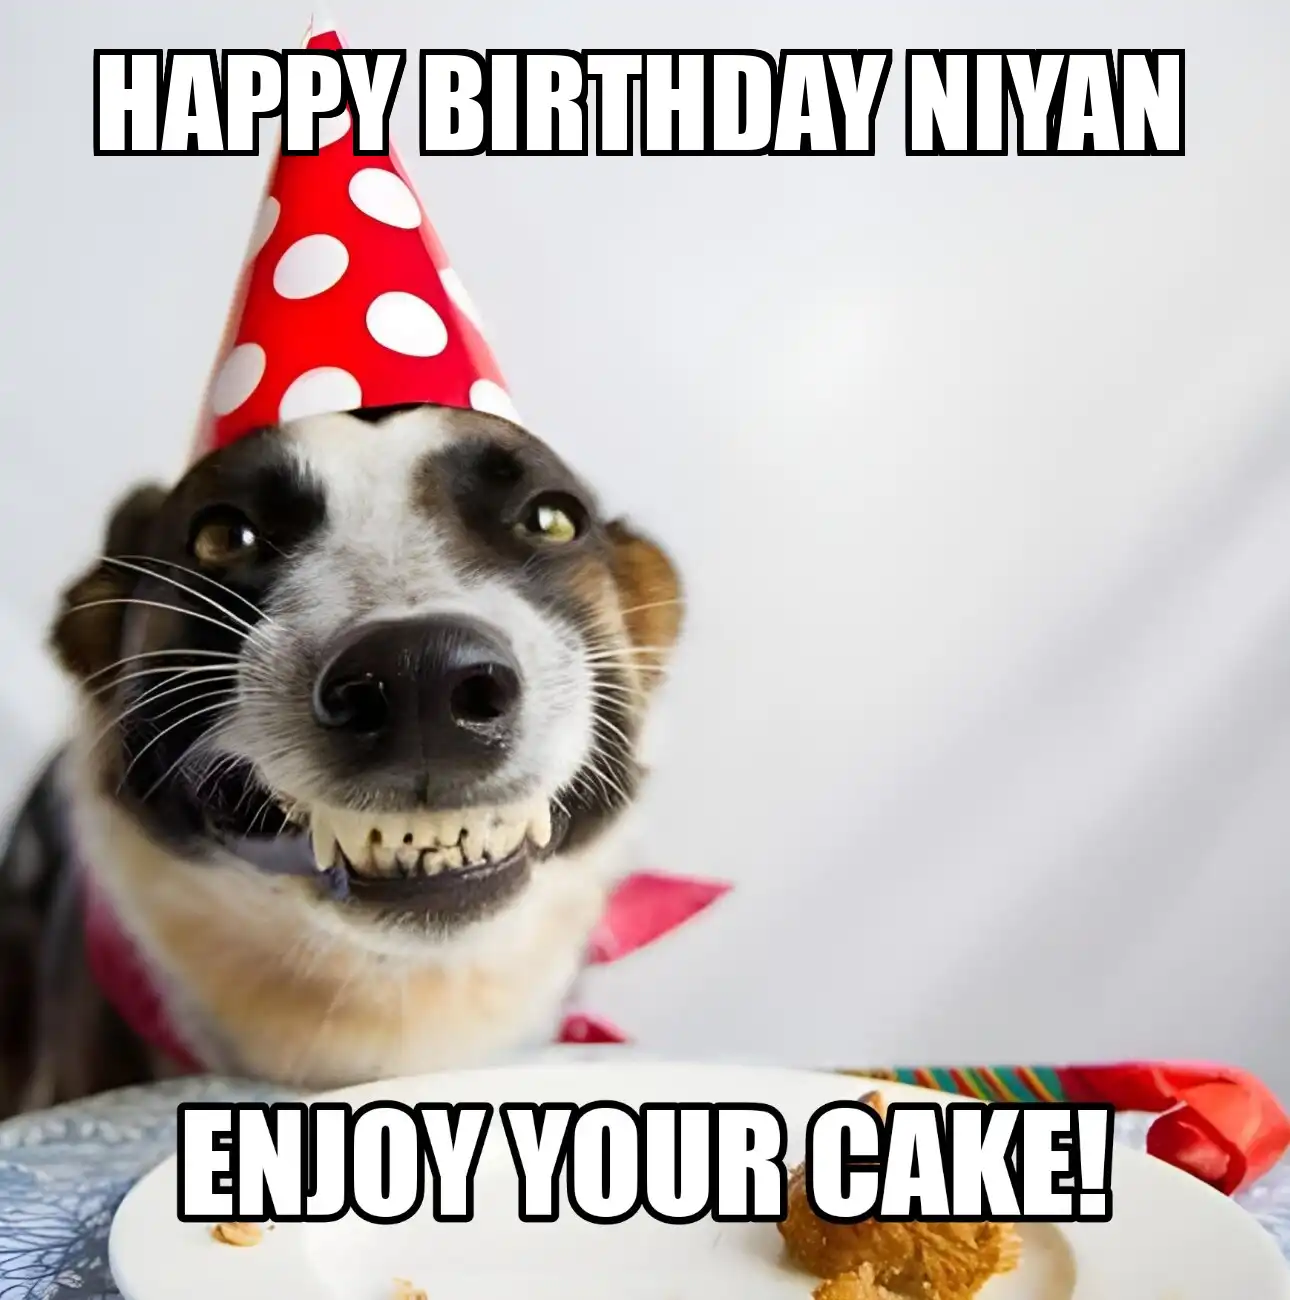 Happy Birthday Niyan Enjoy Your Cake Dog Meme